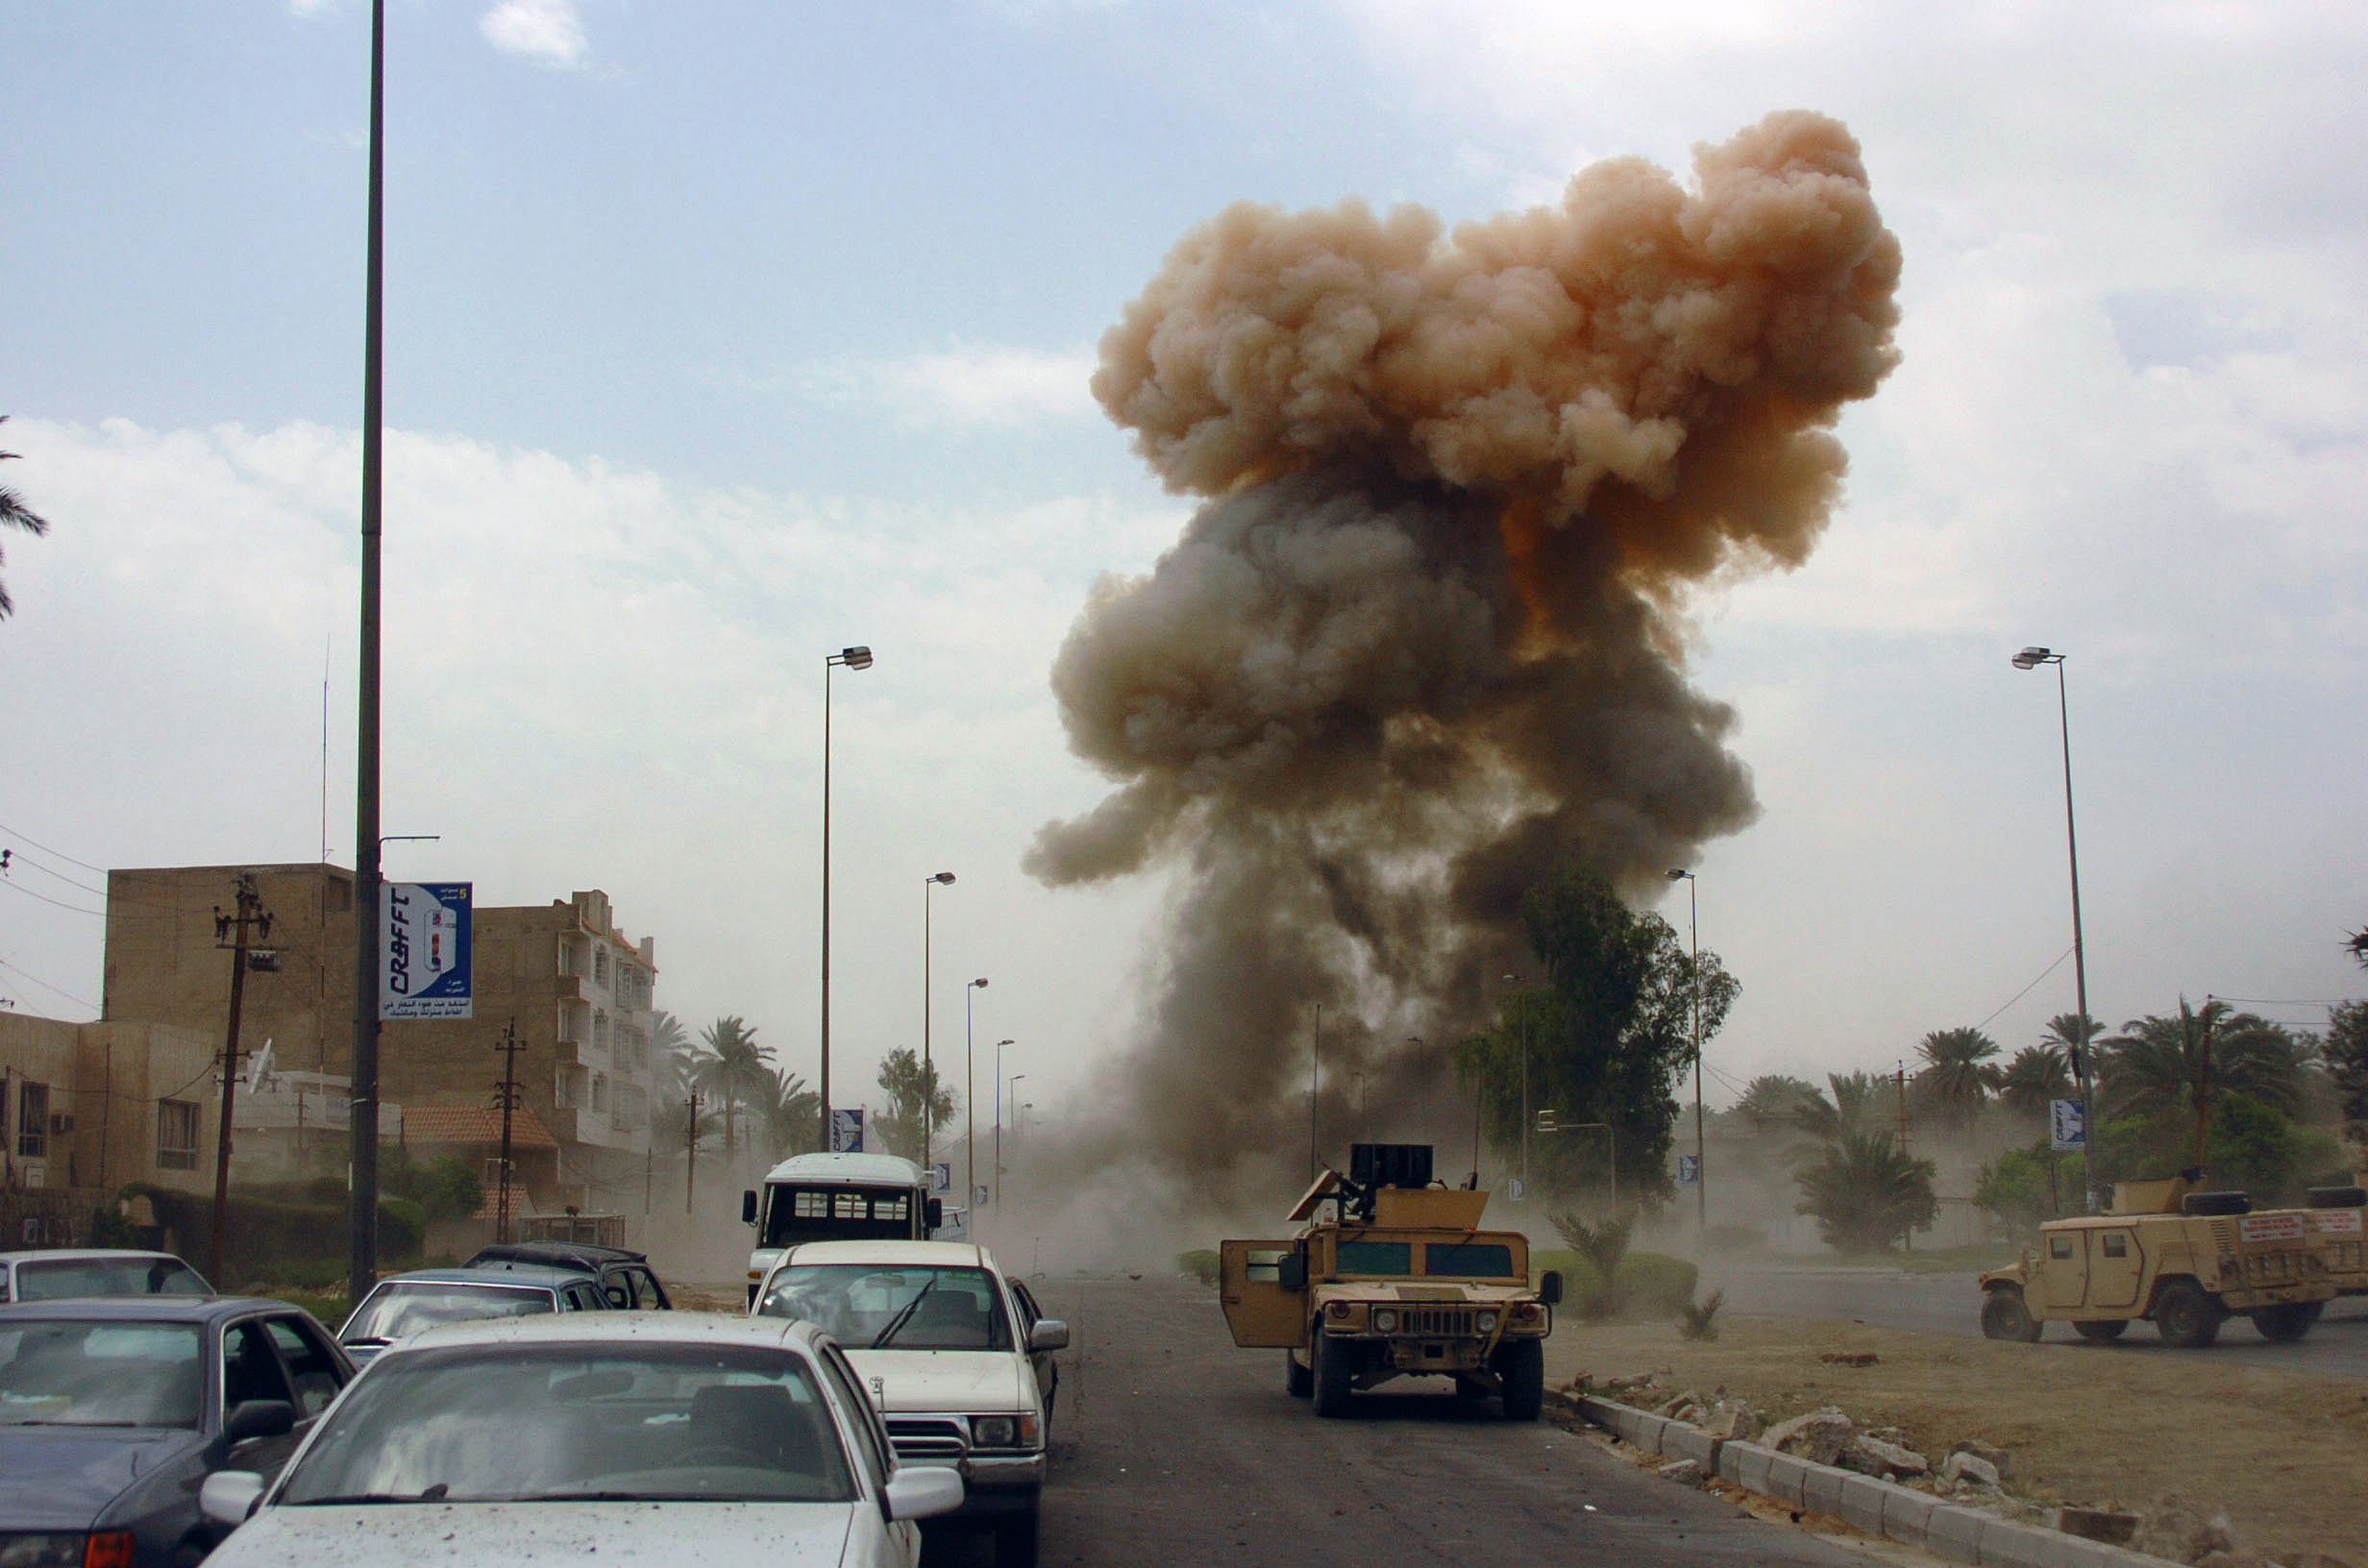 Μέλη ιρακινής οργάνωσης συνελήφθησαν για συμμετοχή σε επιθέσεις εναντίον Αμερικανών